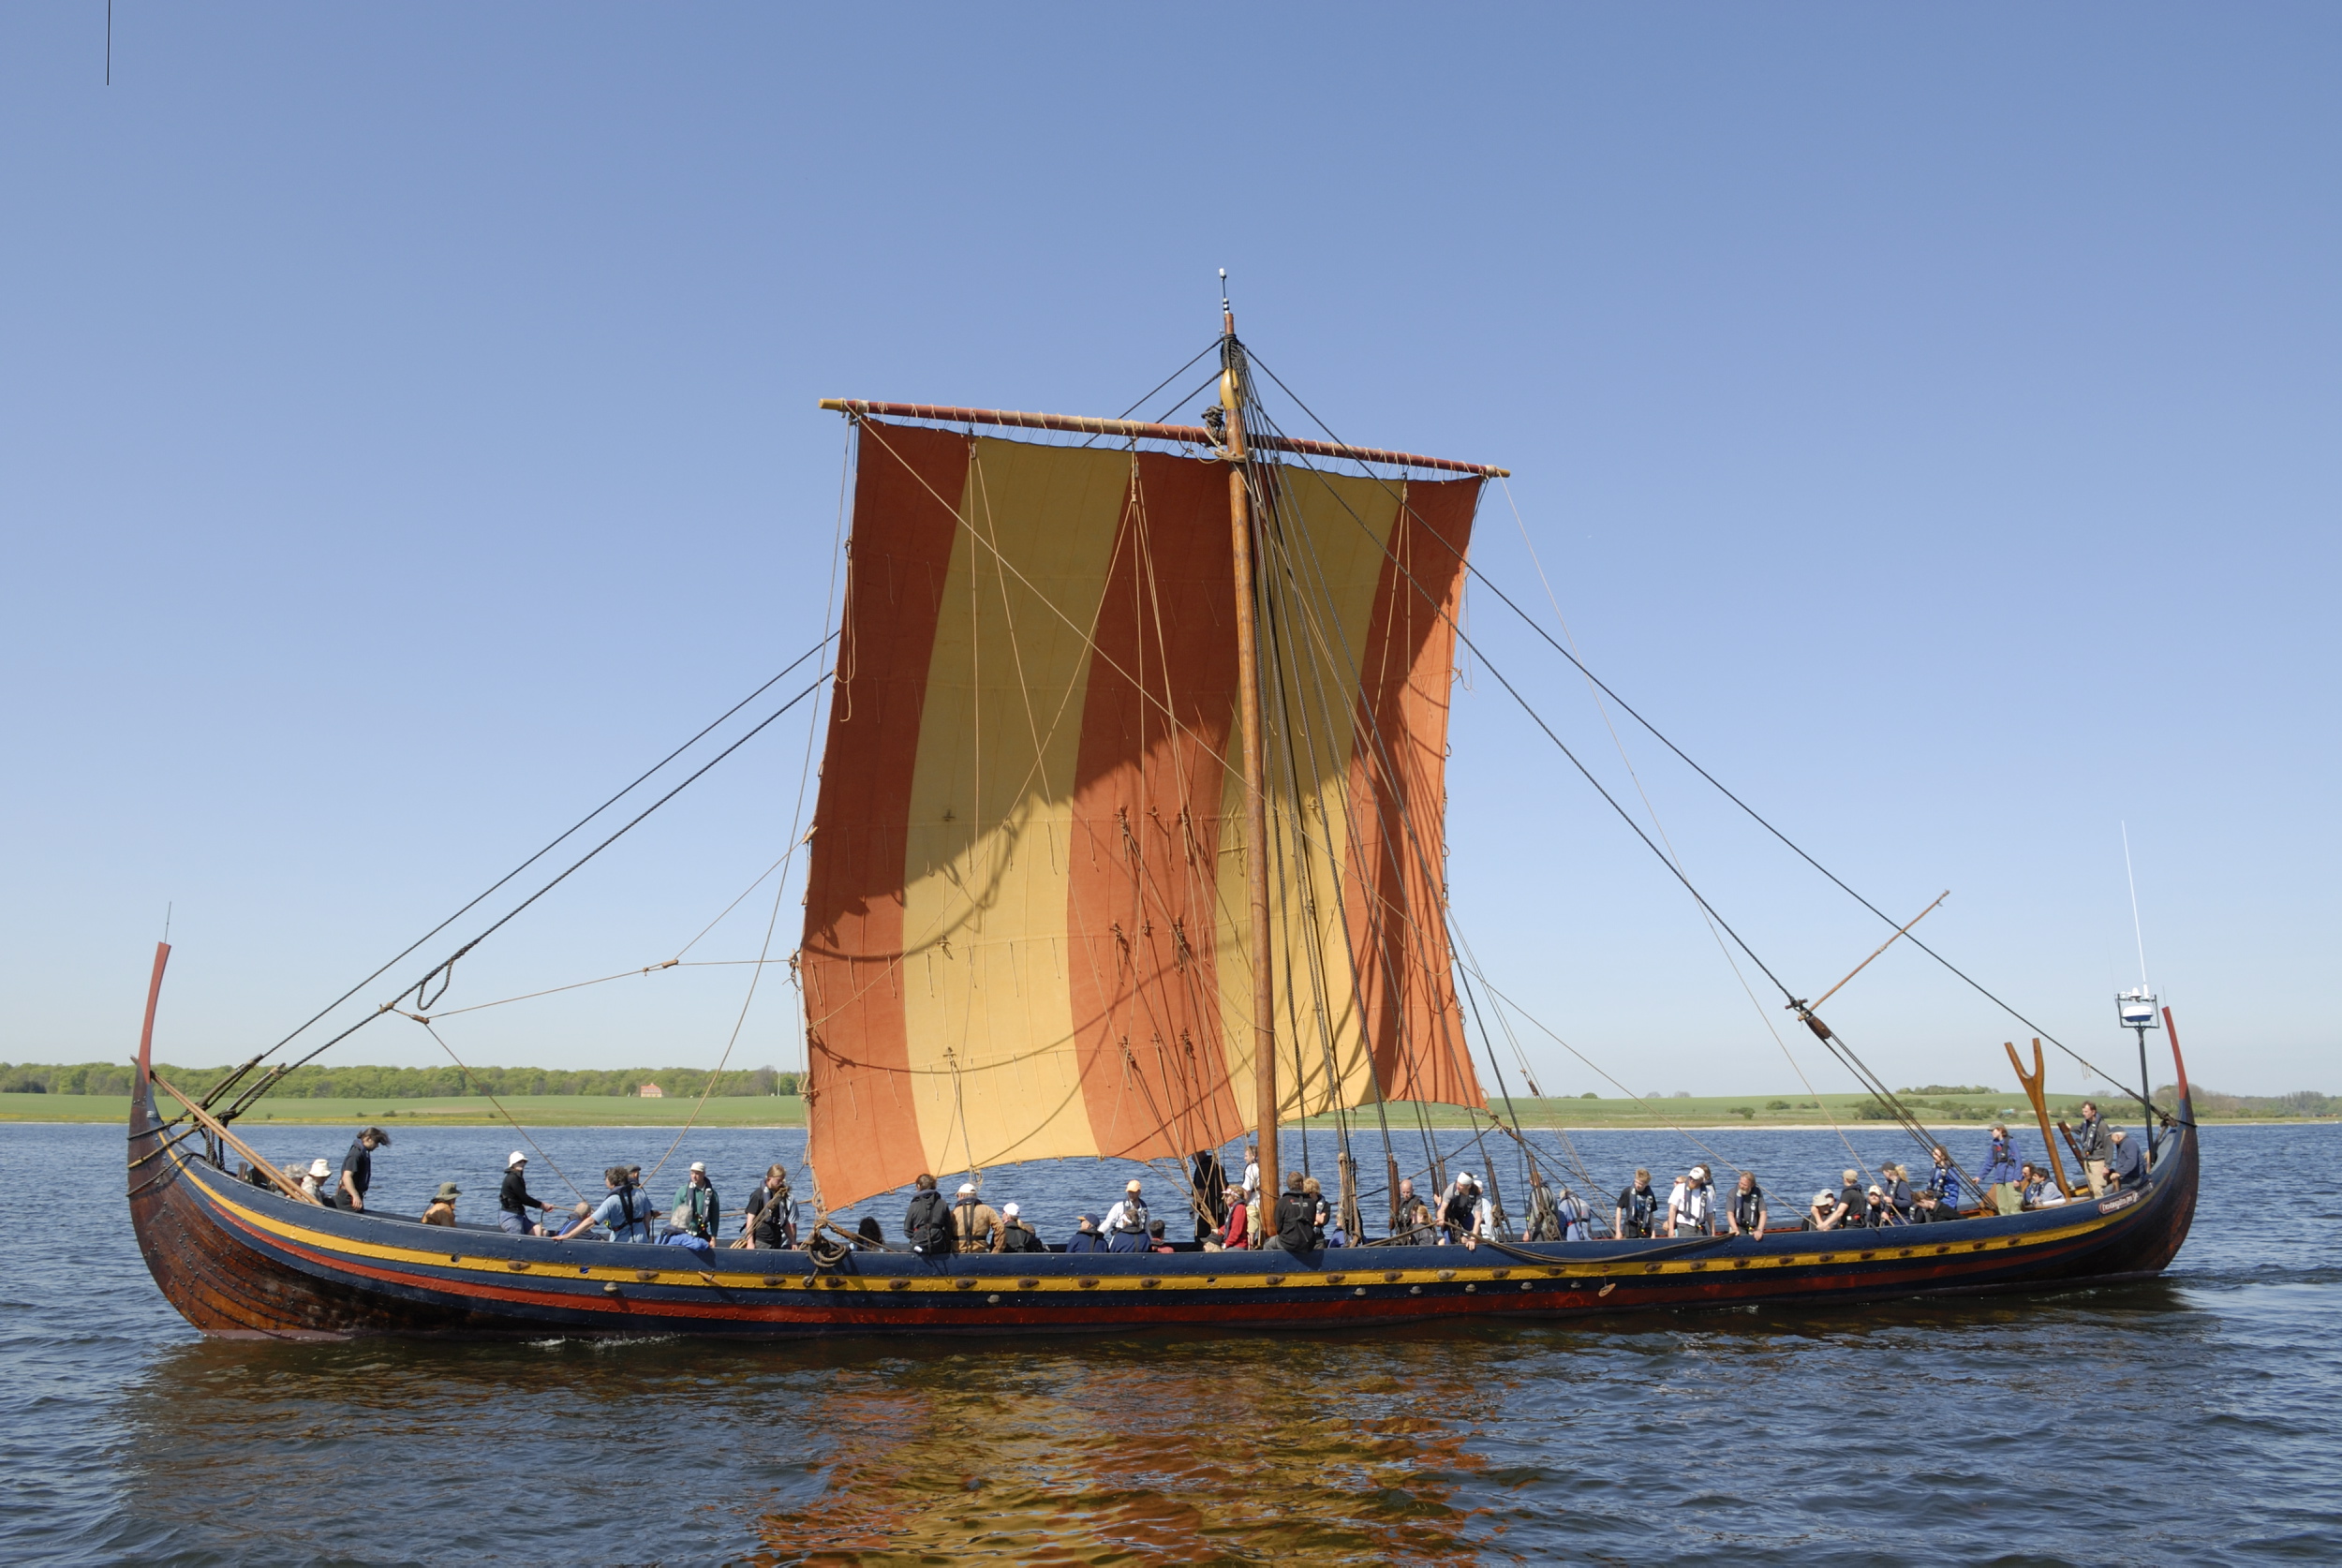 Название ладьи. Лодки викингов драккары. Драккар судно викингов. Ладья Драккар викингов. Снеккар корабль.